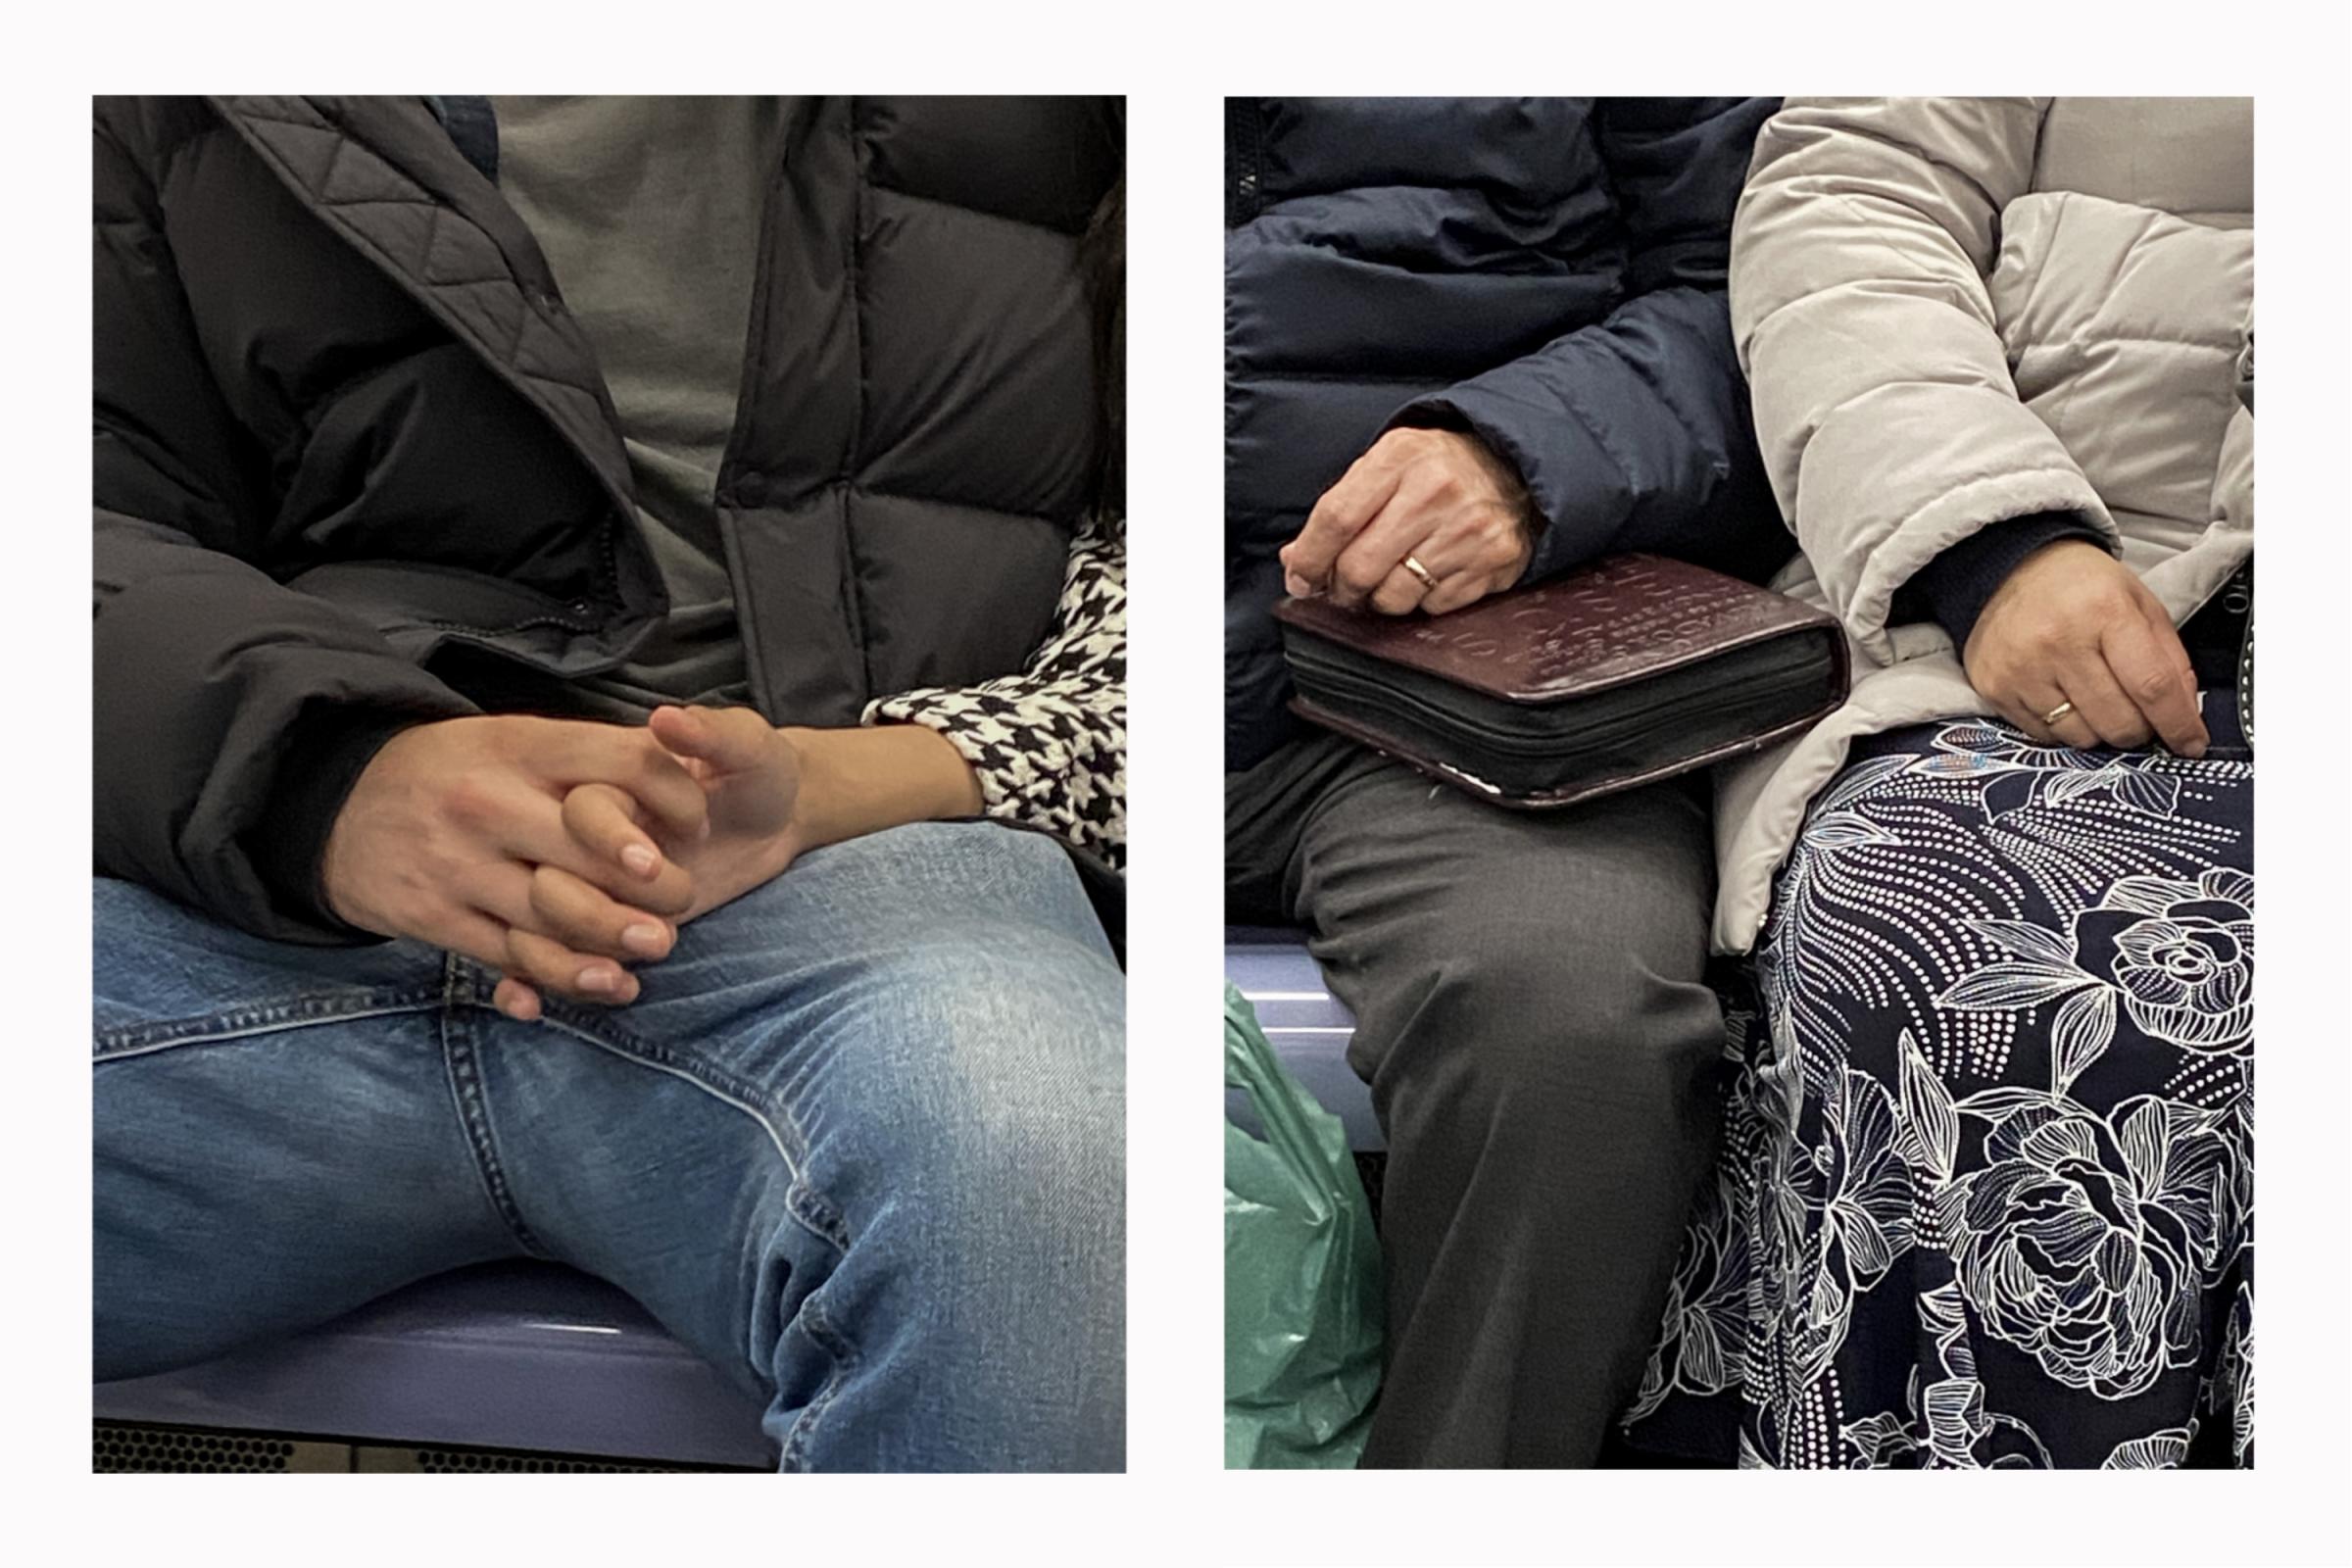 Subway Hands